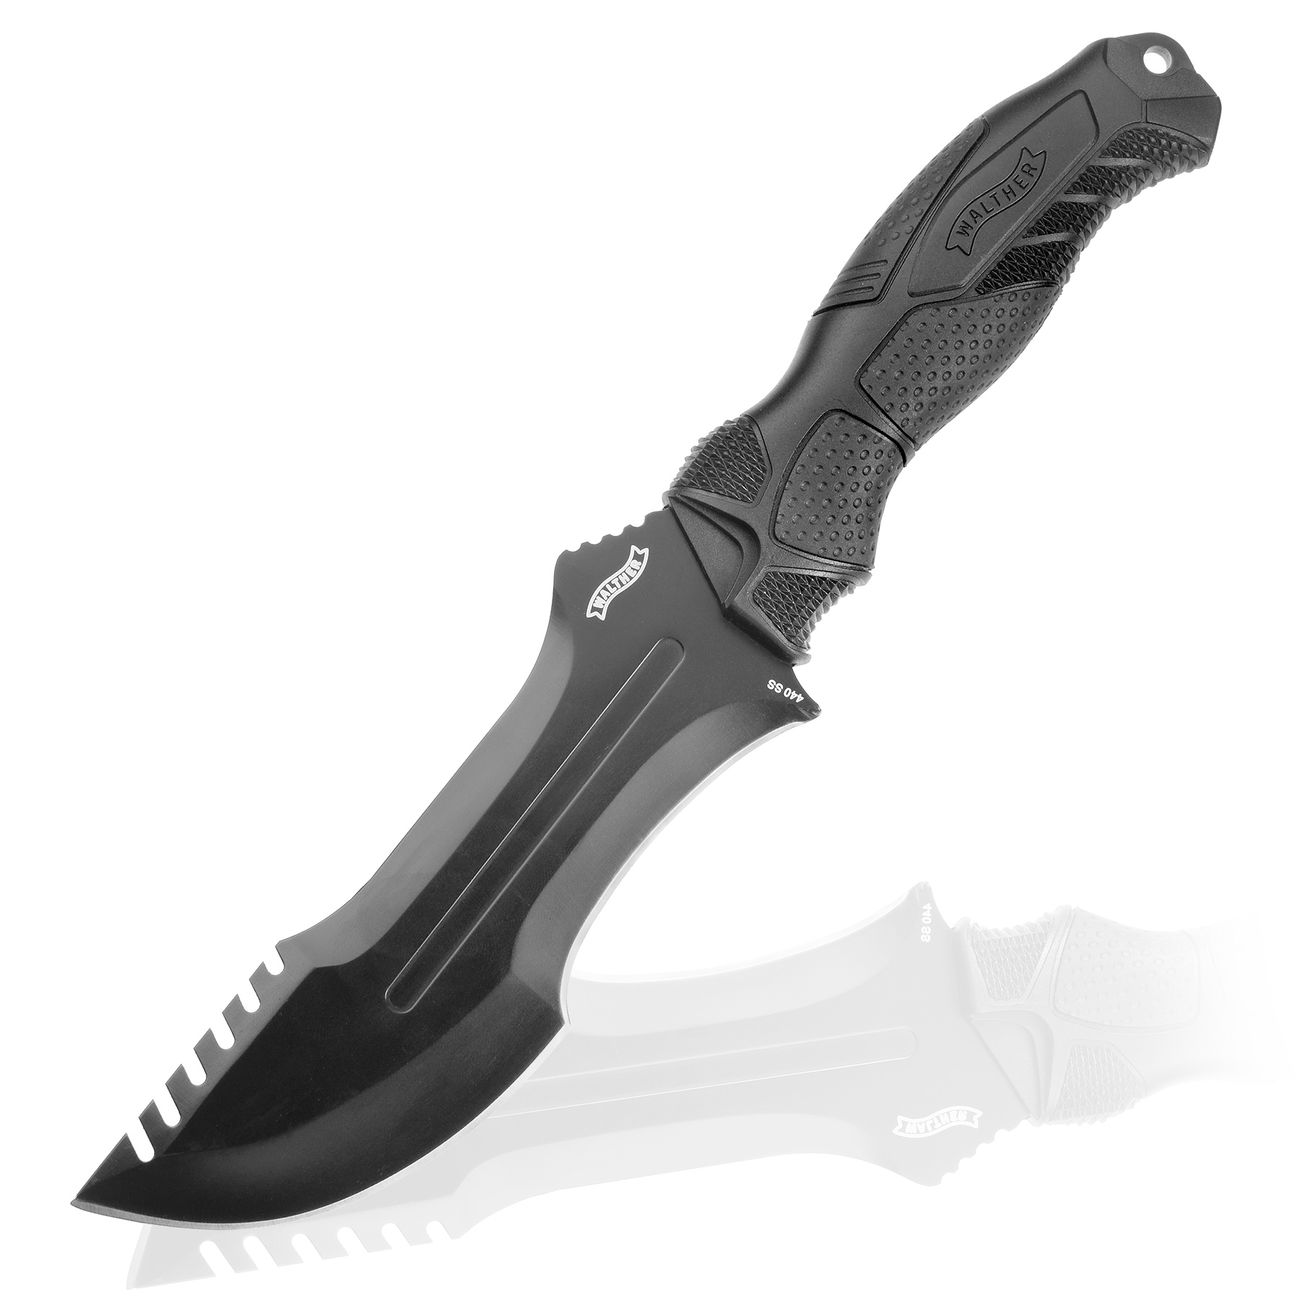 Walther OSK I Outdoormesser Survival Knife mit Nylonscheide